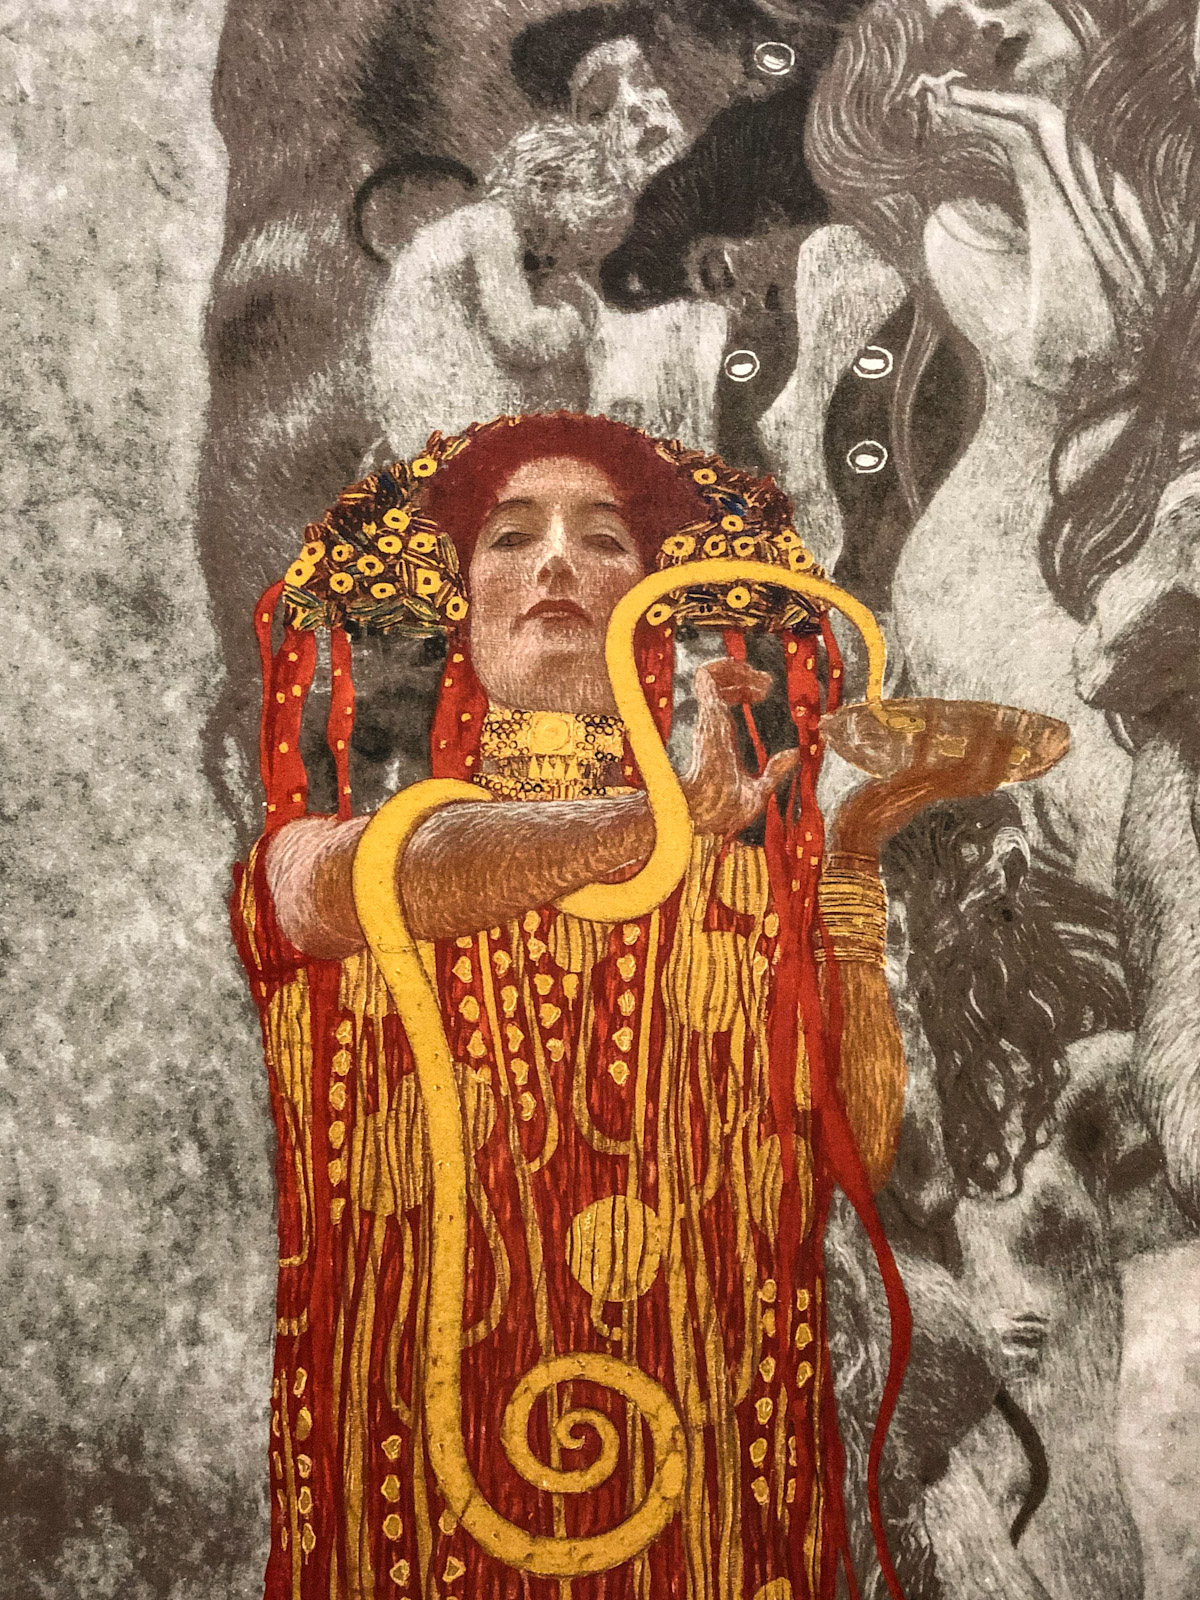 Medicine by Klimt, Vienna, Austria